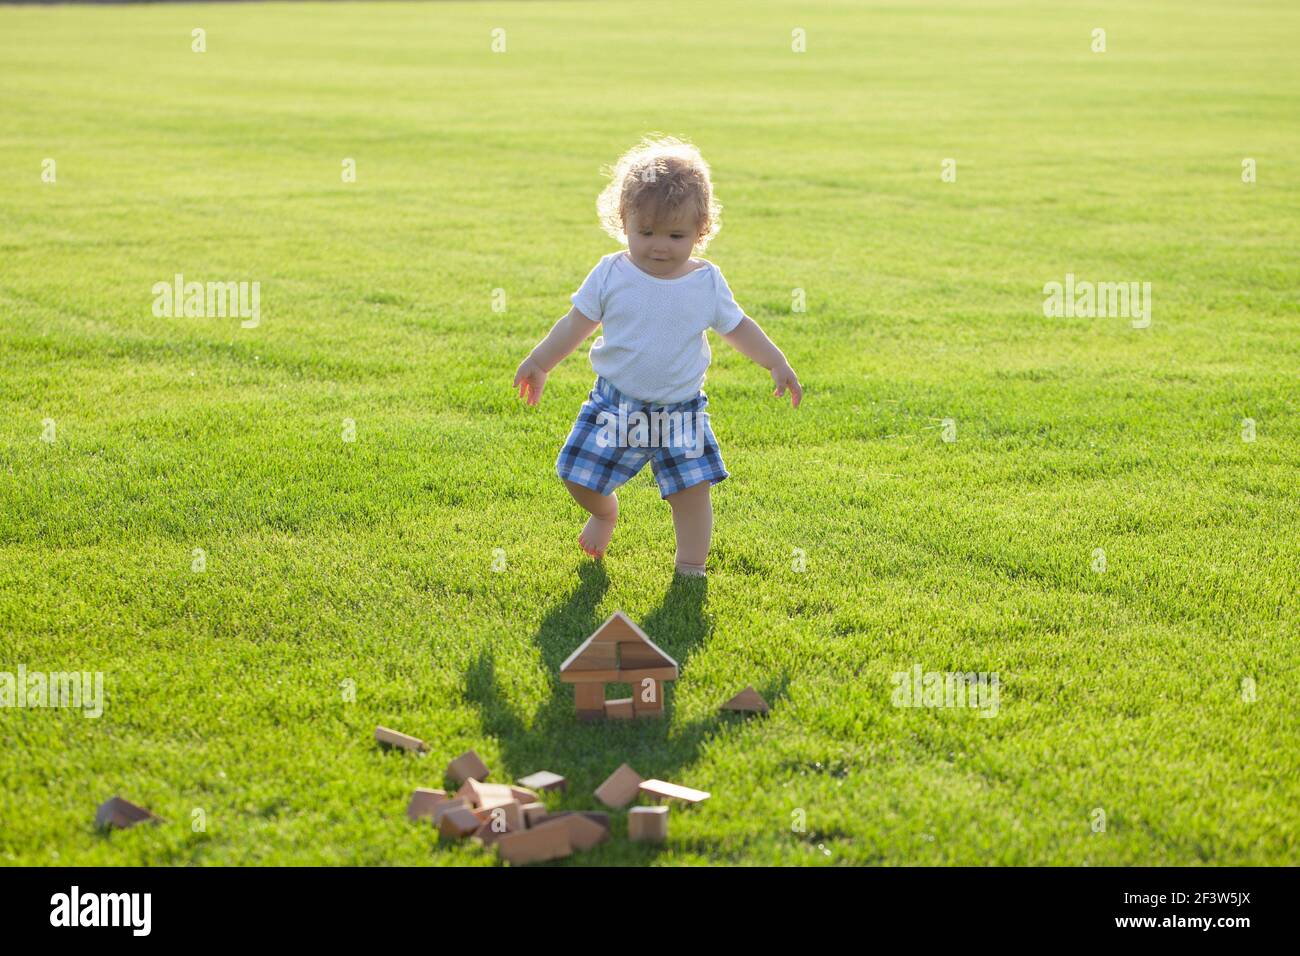 Versicherung Kinder. Baby spielen im grünen Gras. Entwicklung von Kindern. Stockfoto